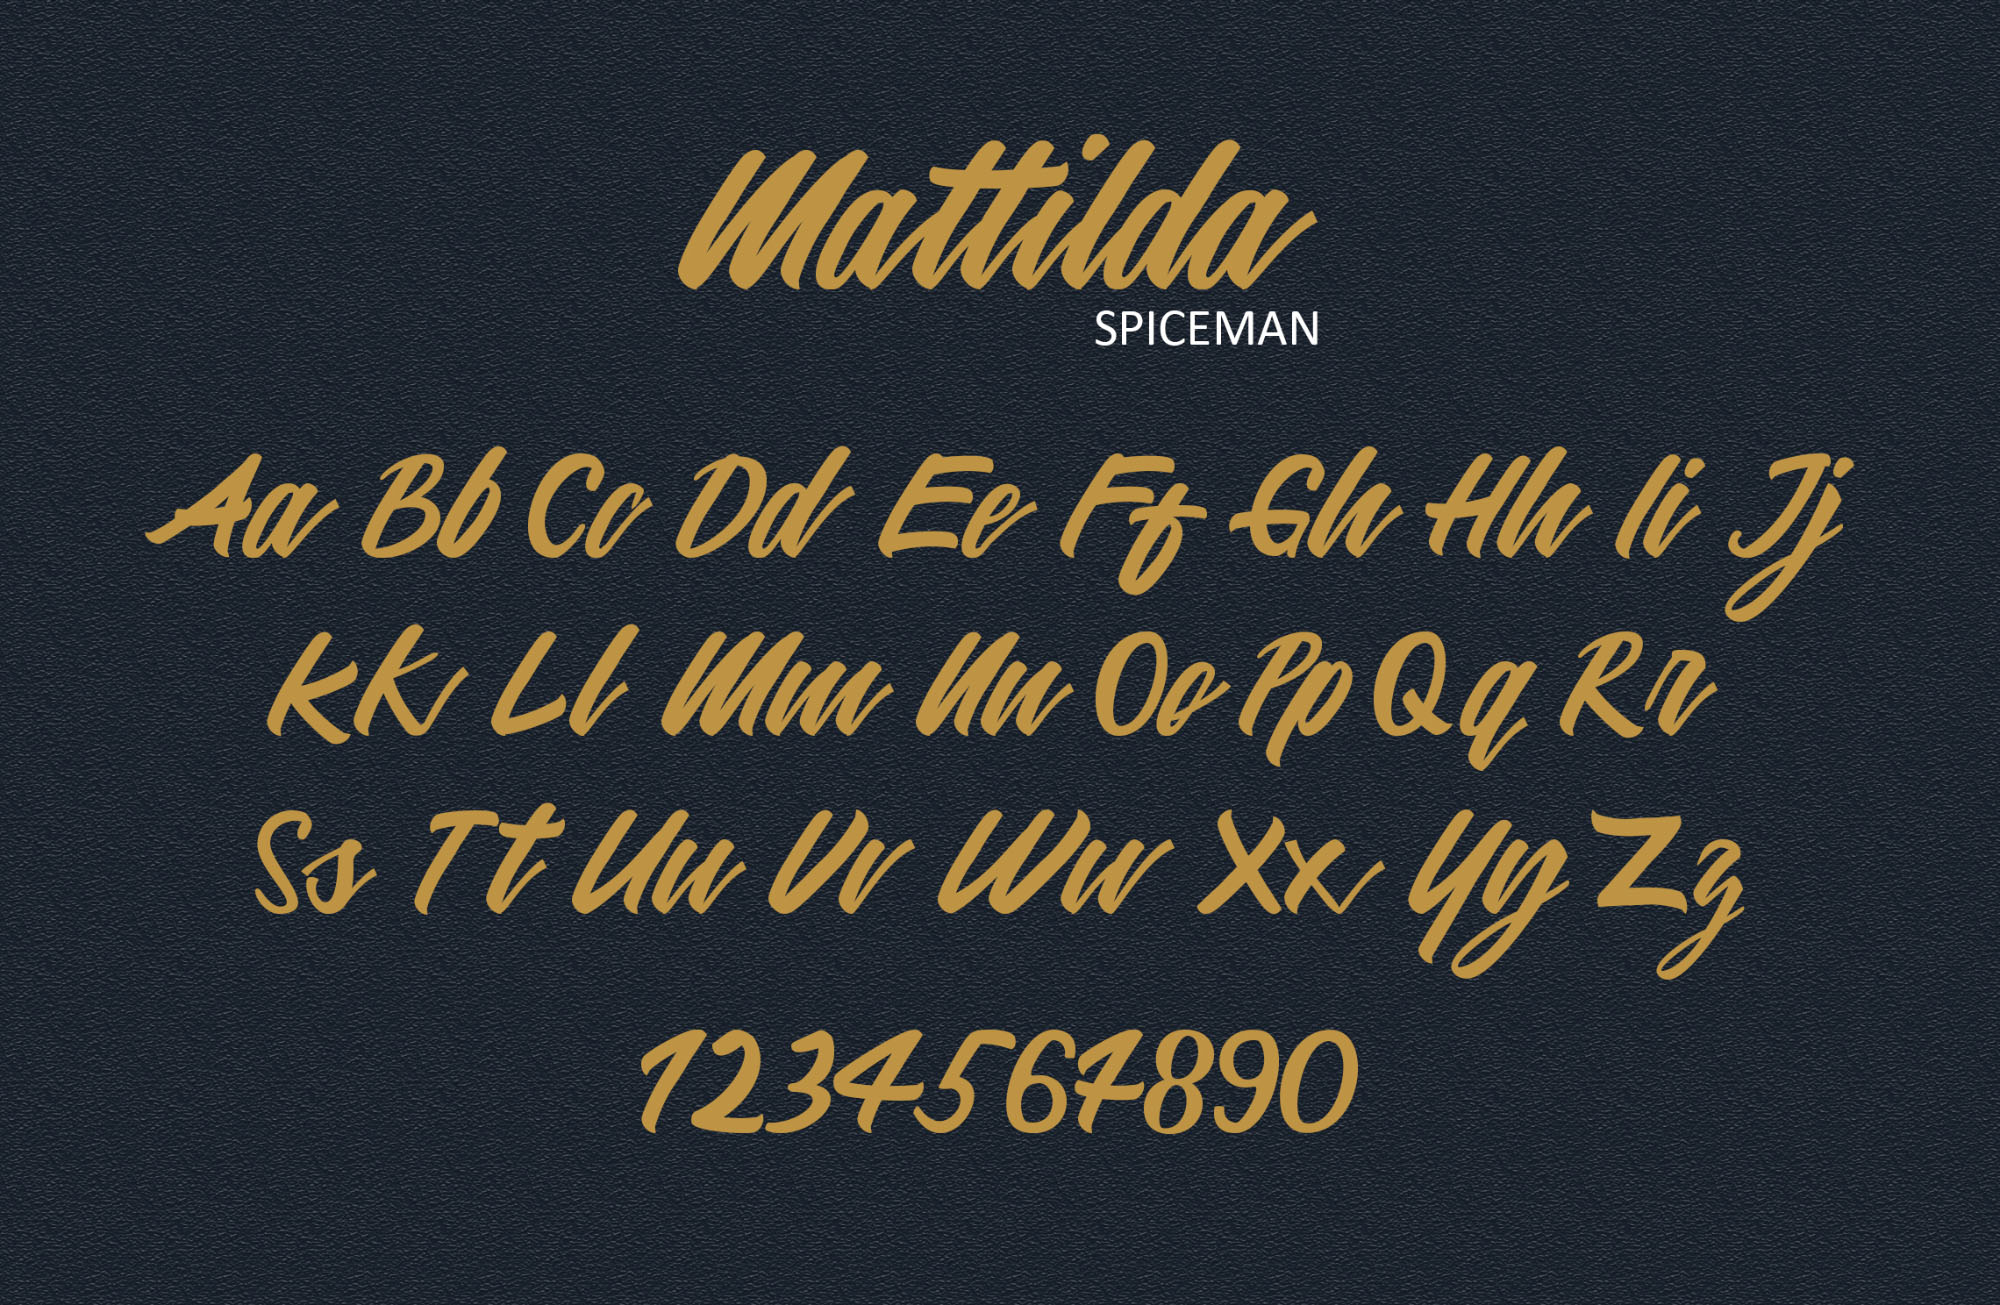 英文画笔连笔艺术字体非凡图库精选 Mattilda Script Font插图(2)